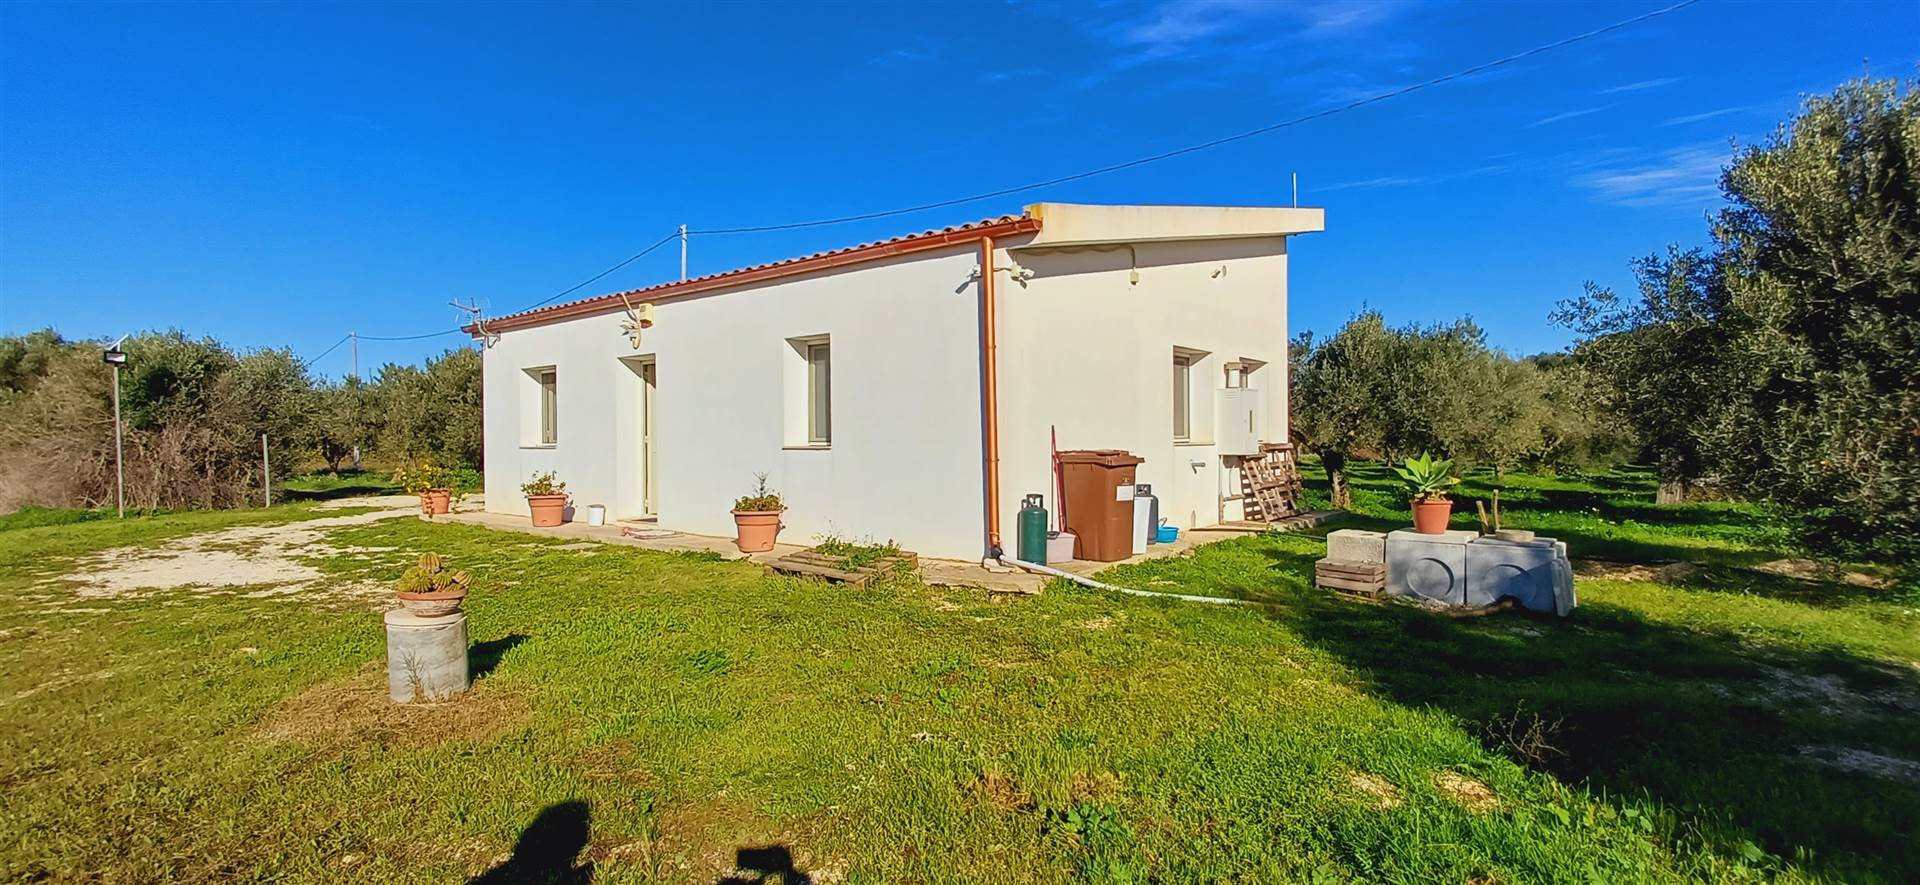 Villa in vendita a Sciacca, 4 locali, prezzo € 165.000 | PortaleAgenzieImmobiliari.it